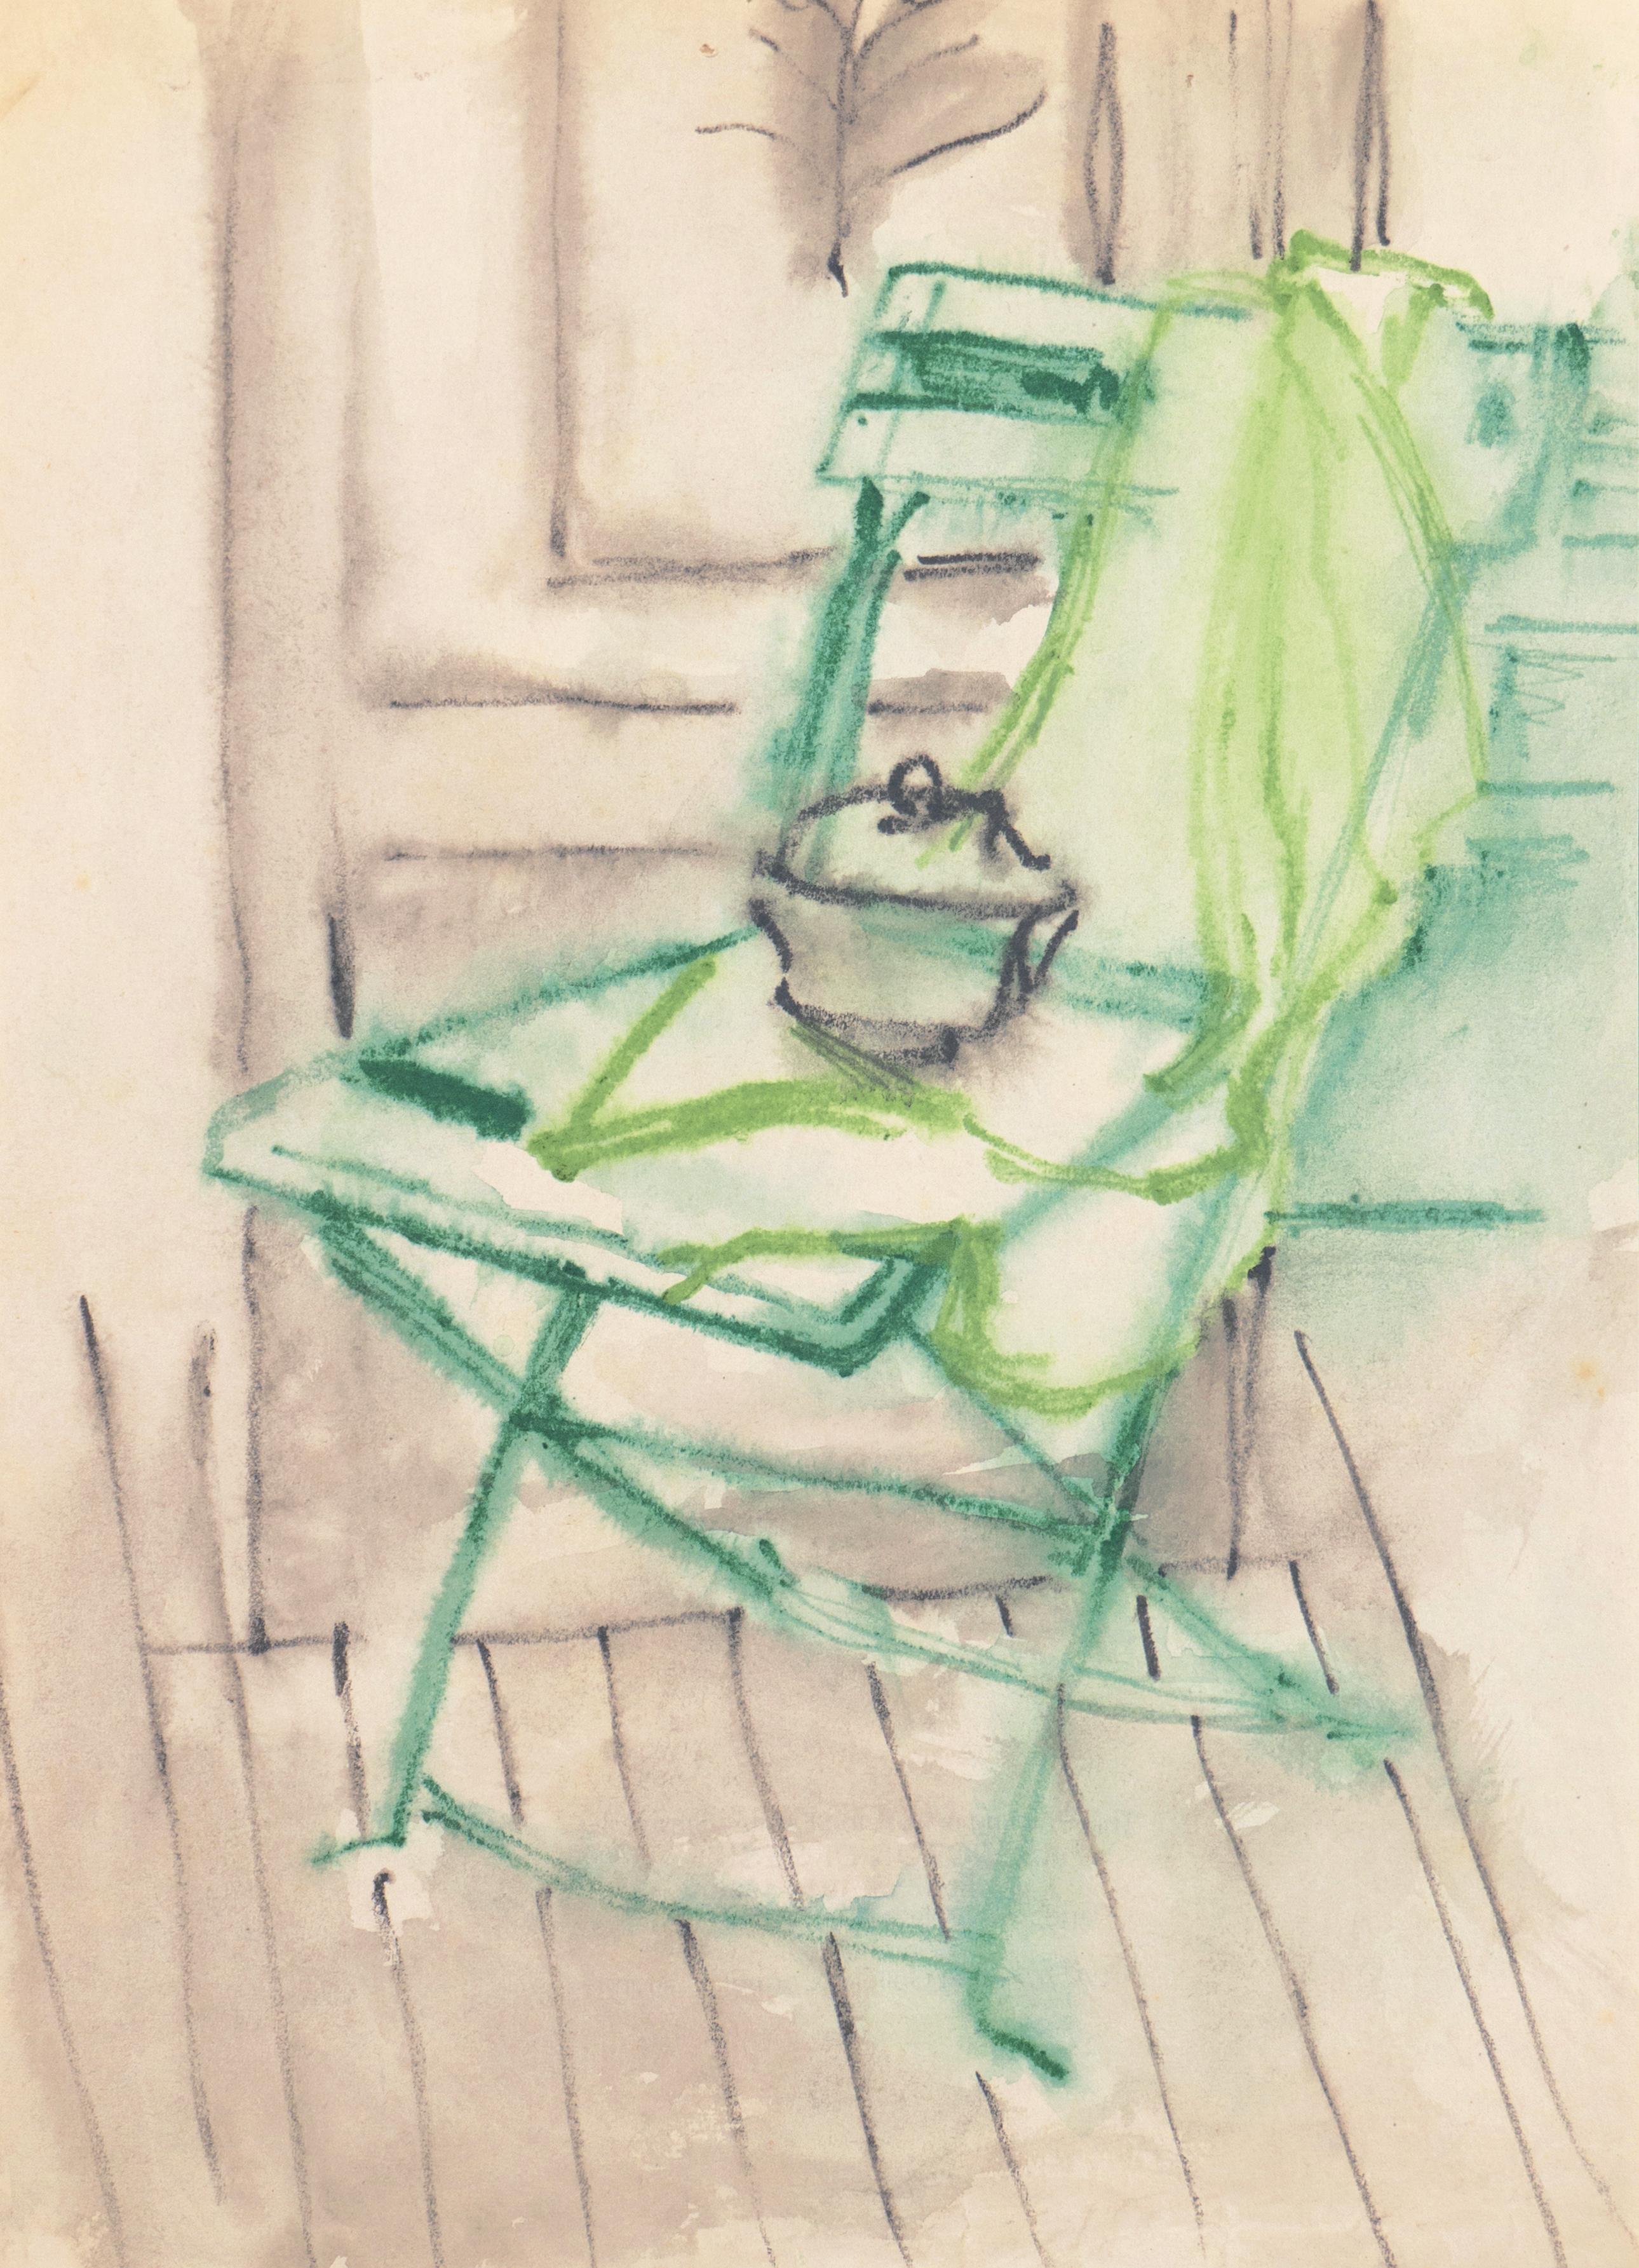 'Green Chair' Paris, Louvre, Salon d'Automne, Académie Chaumière, LACMA, SFAA 